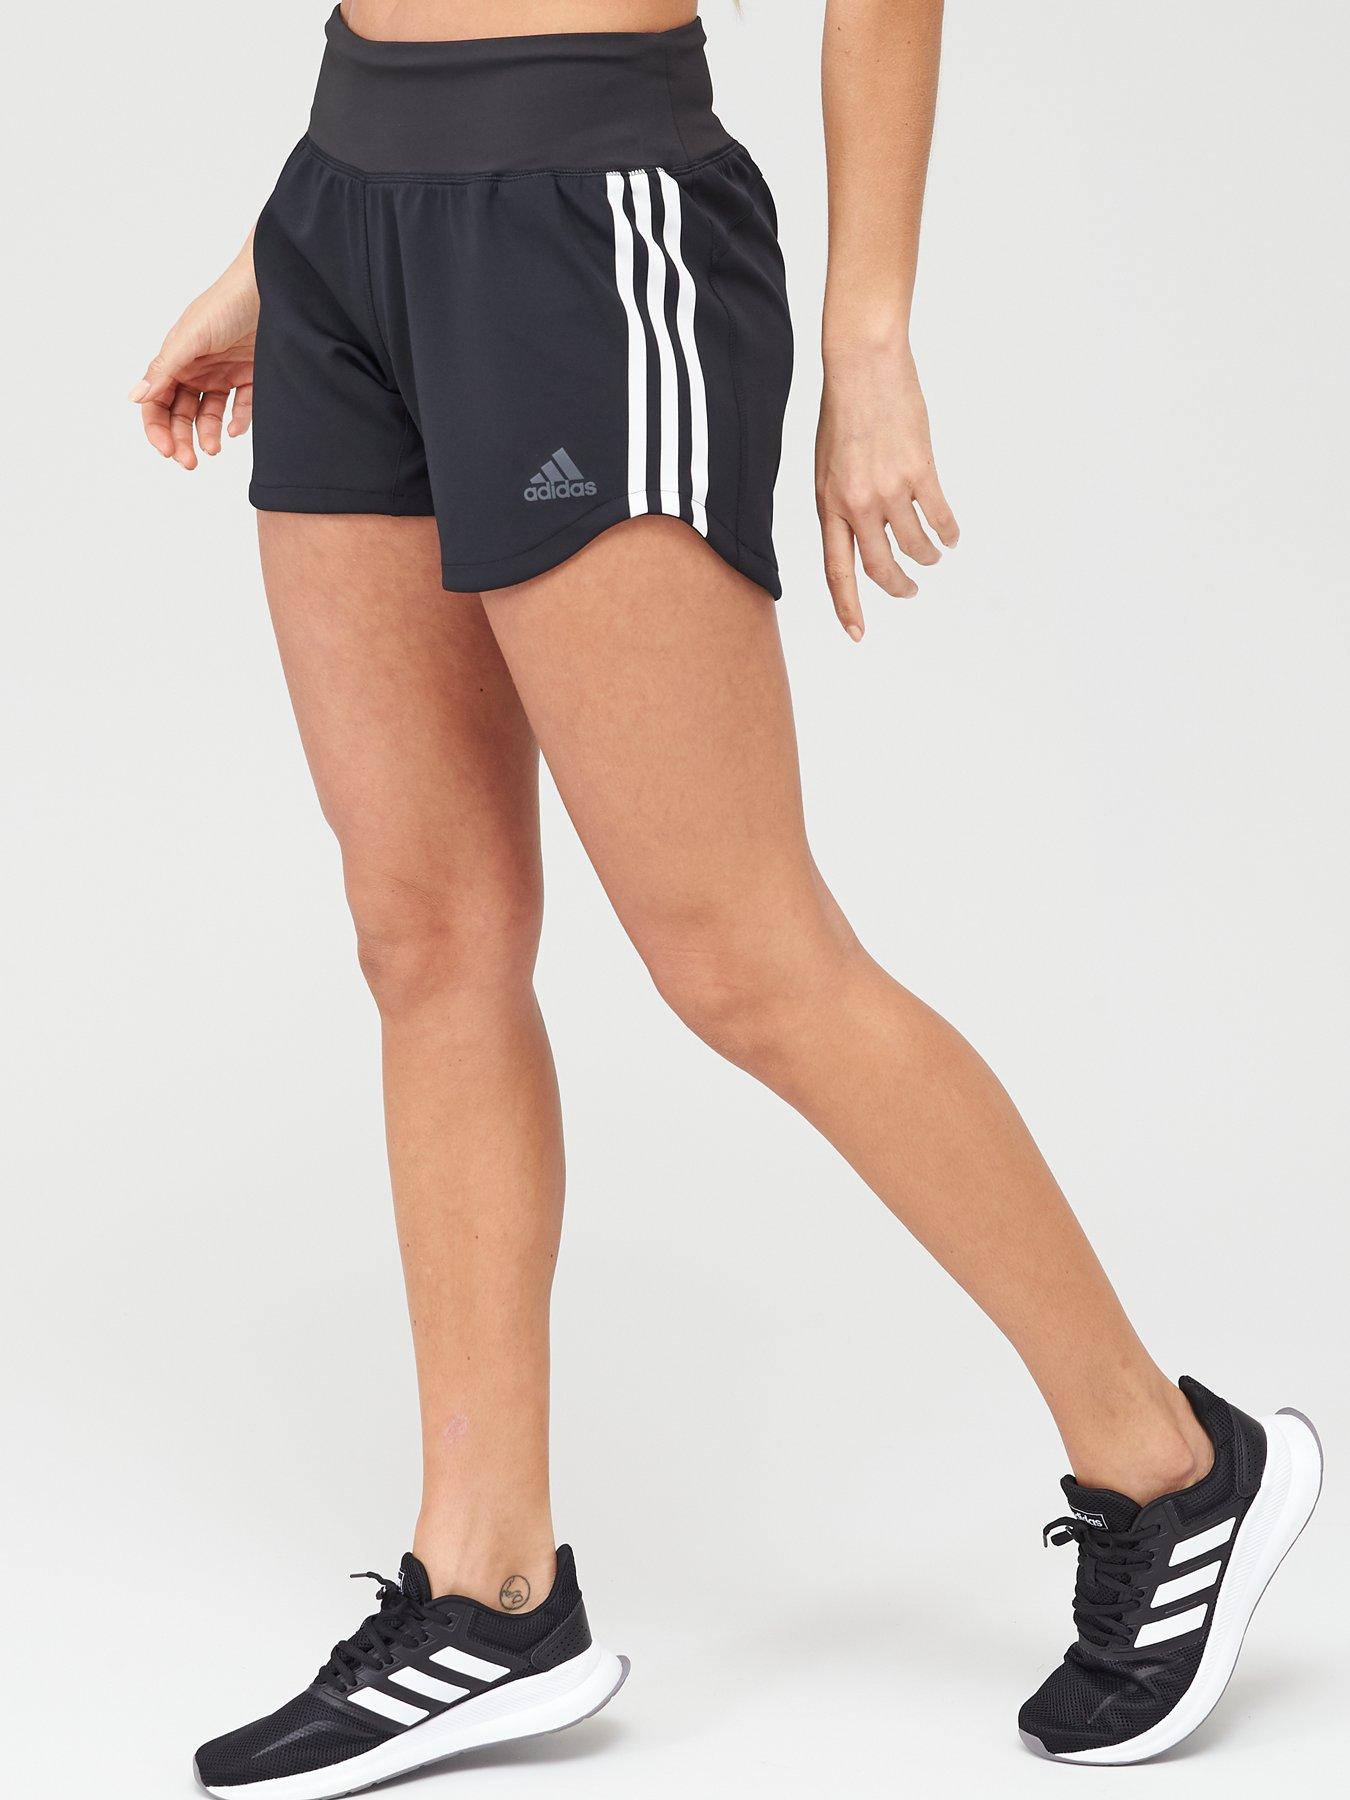 adidas gym shorts womens